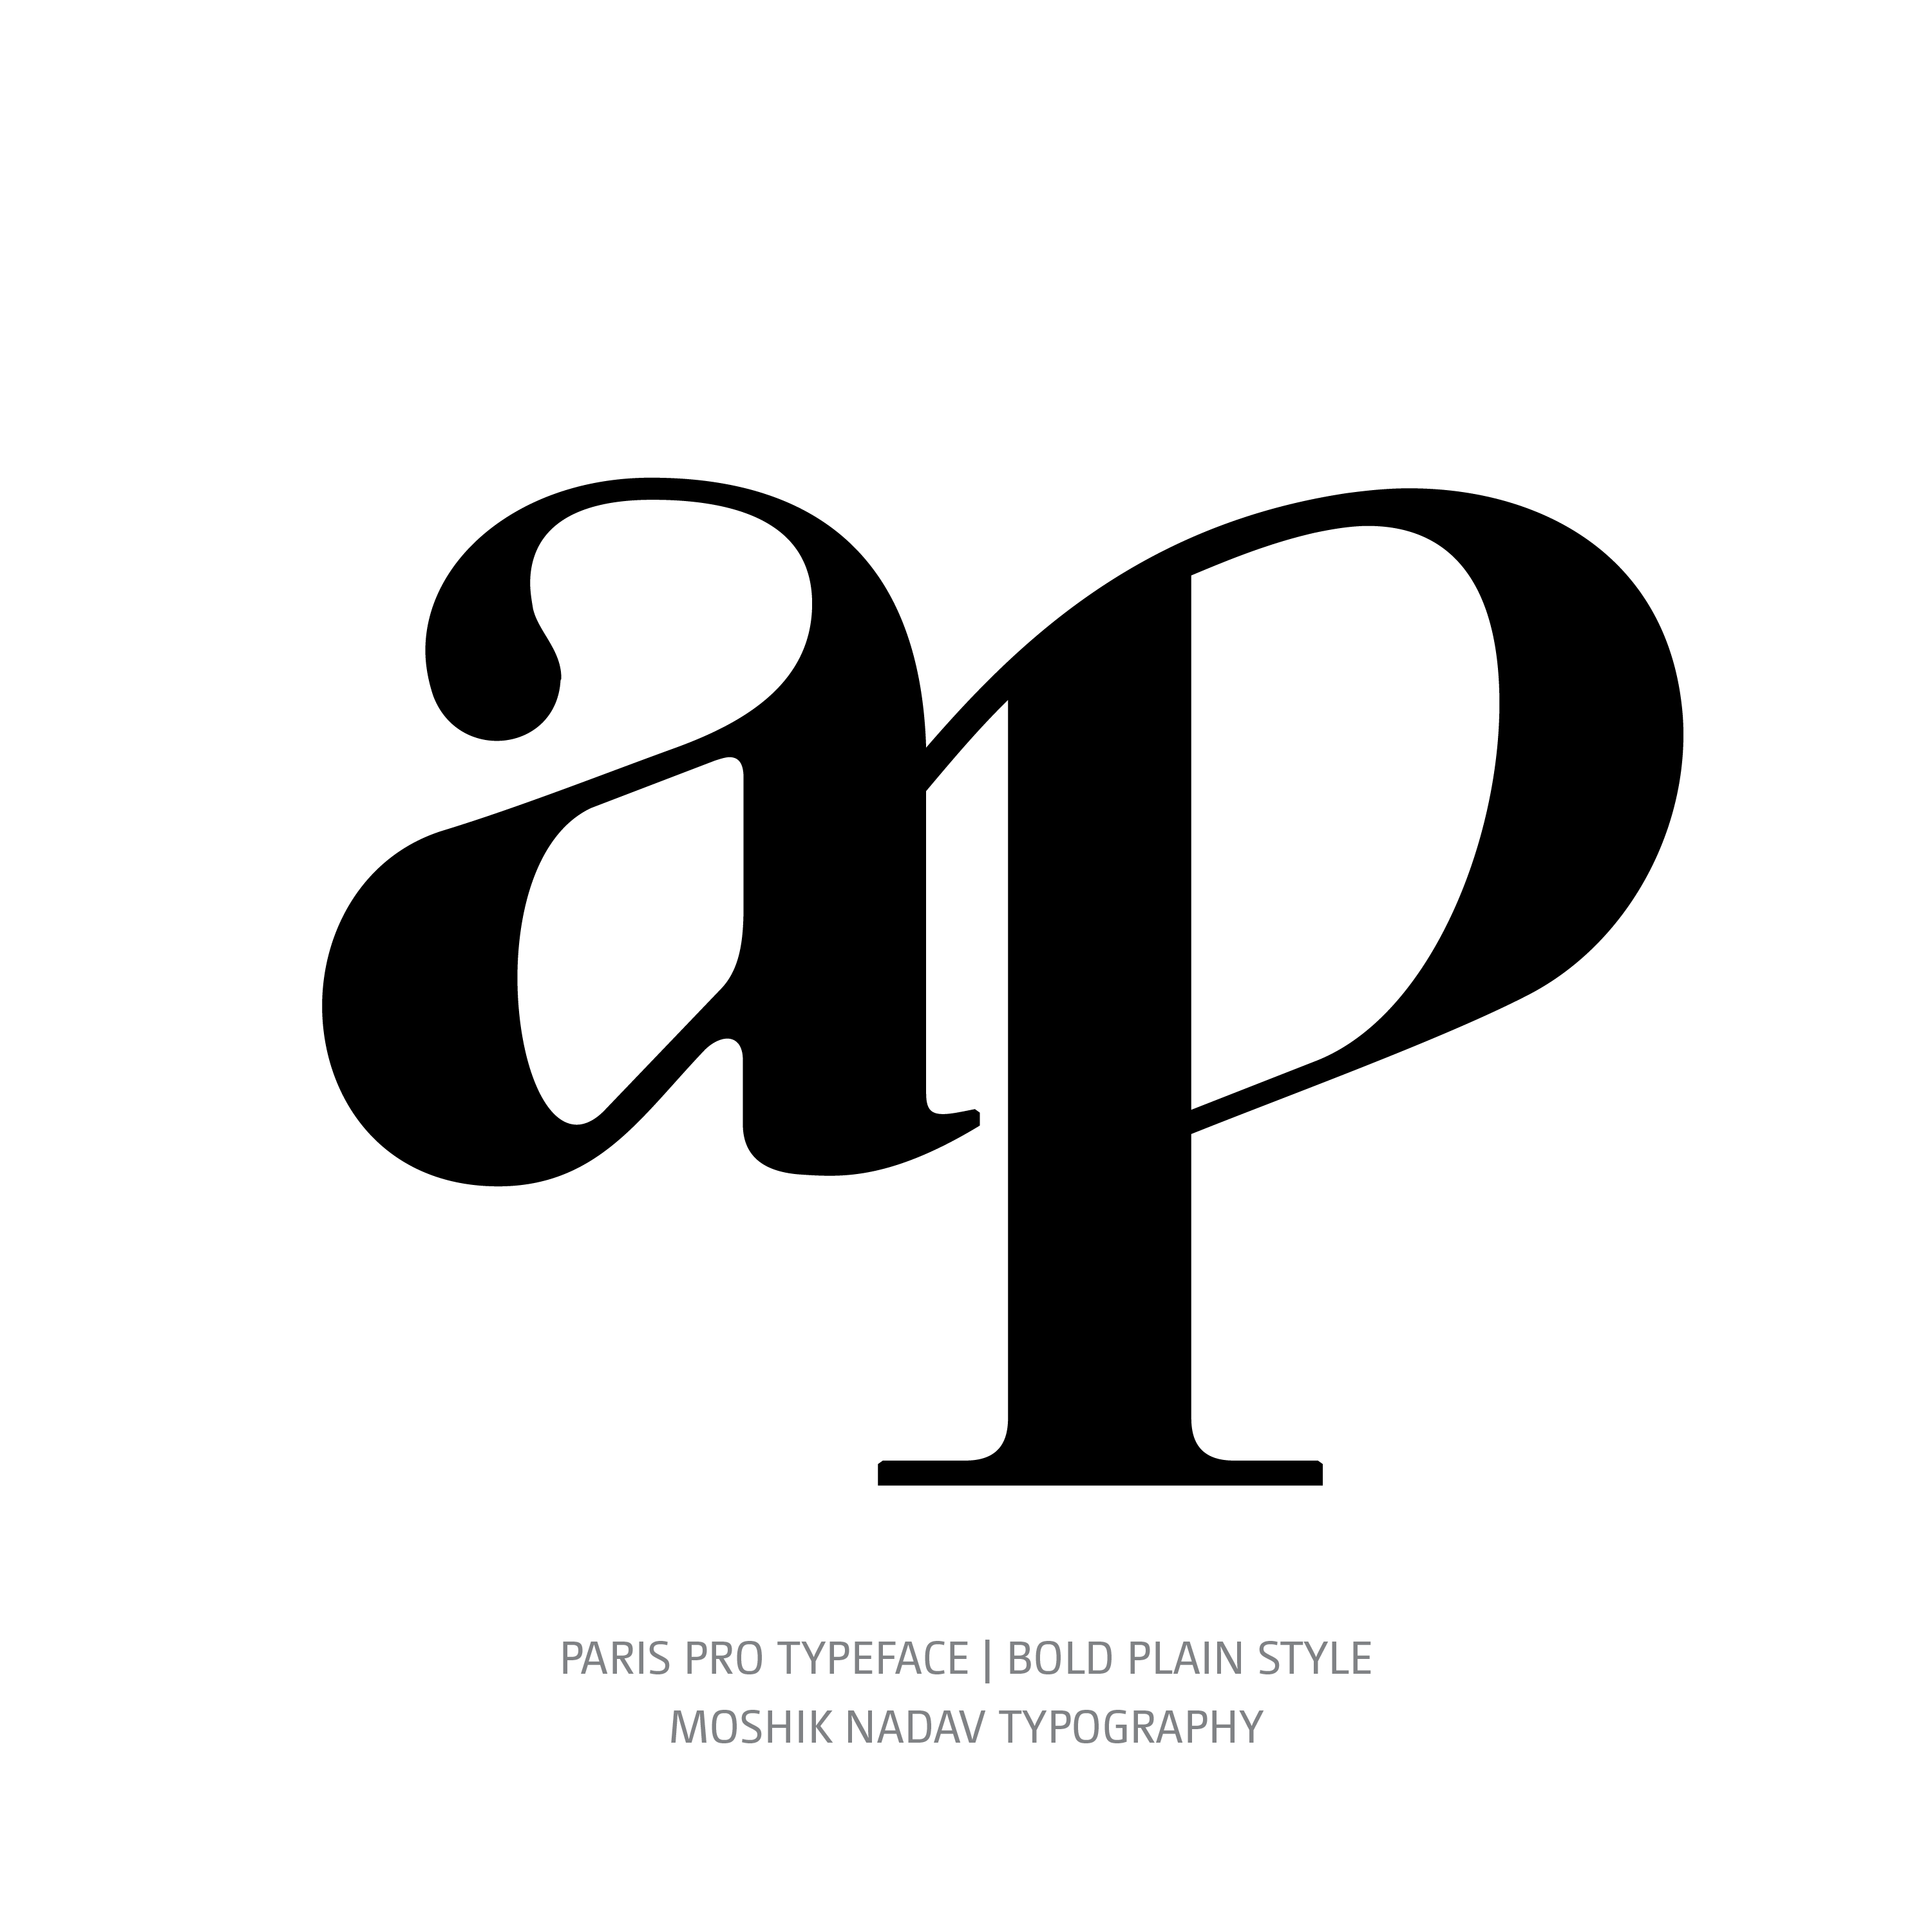 Paris Pro Typeface Bold ap ligature